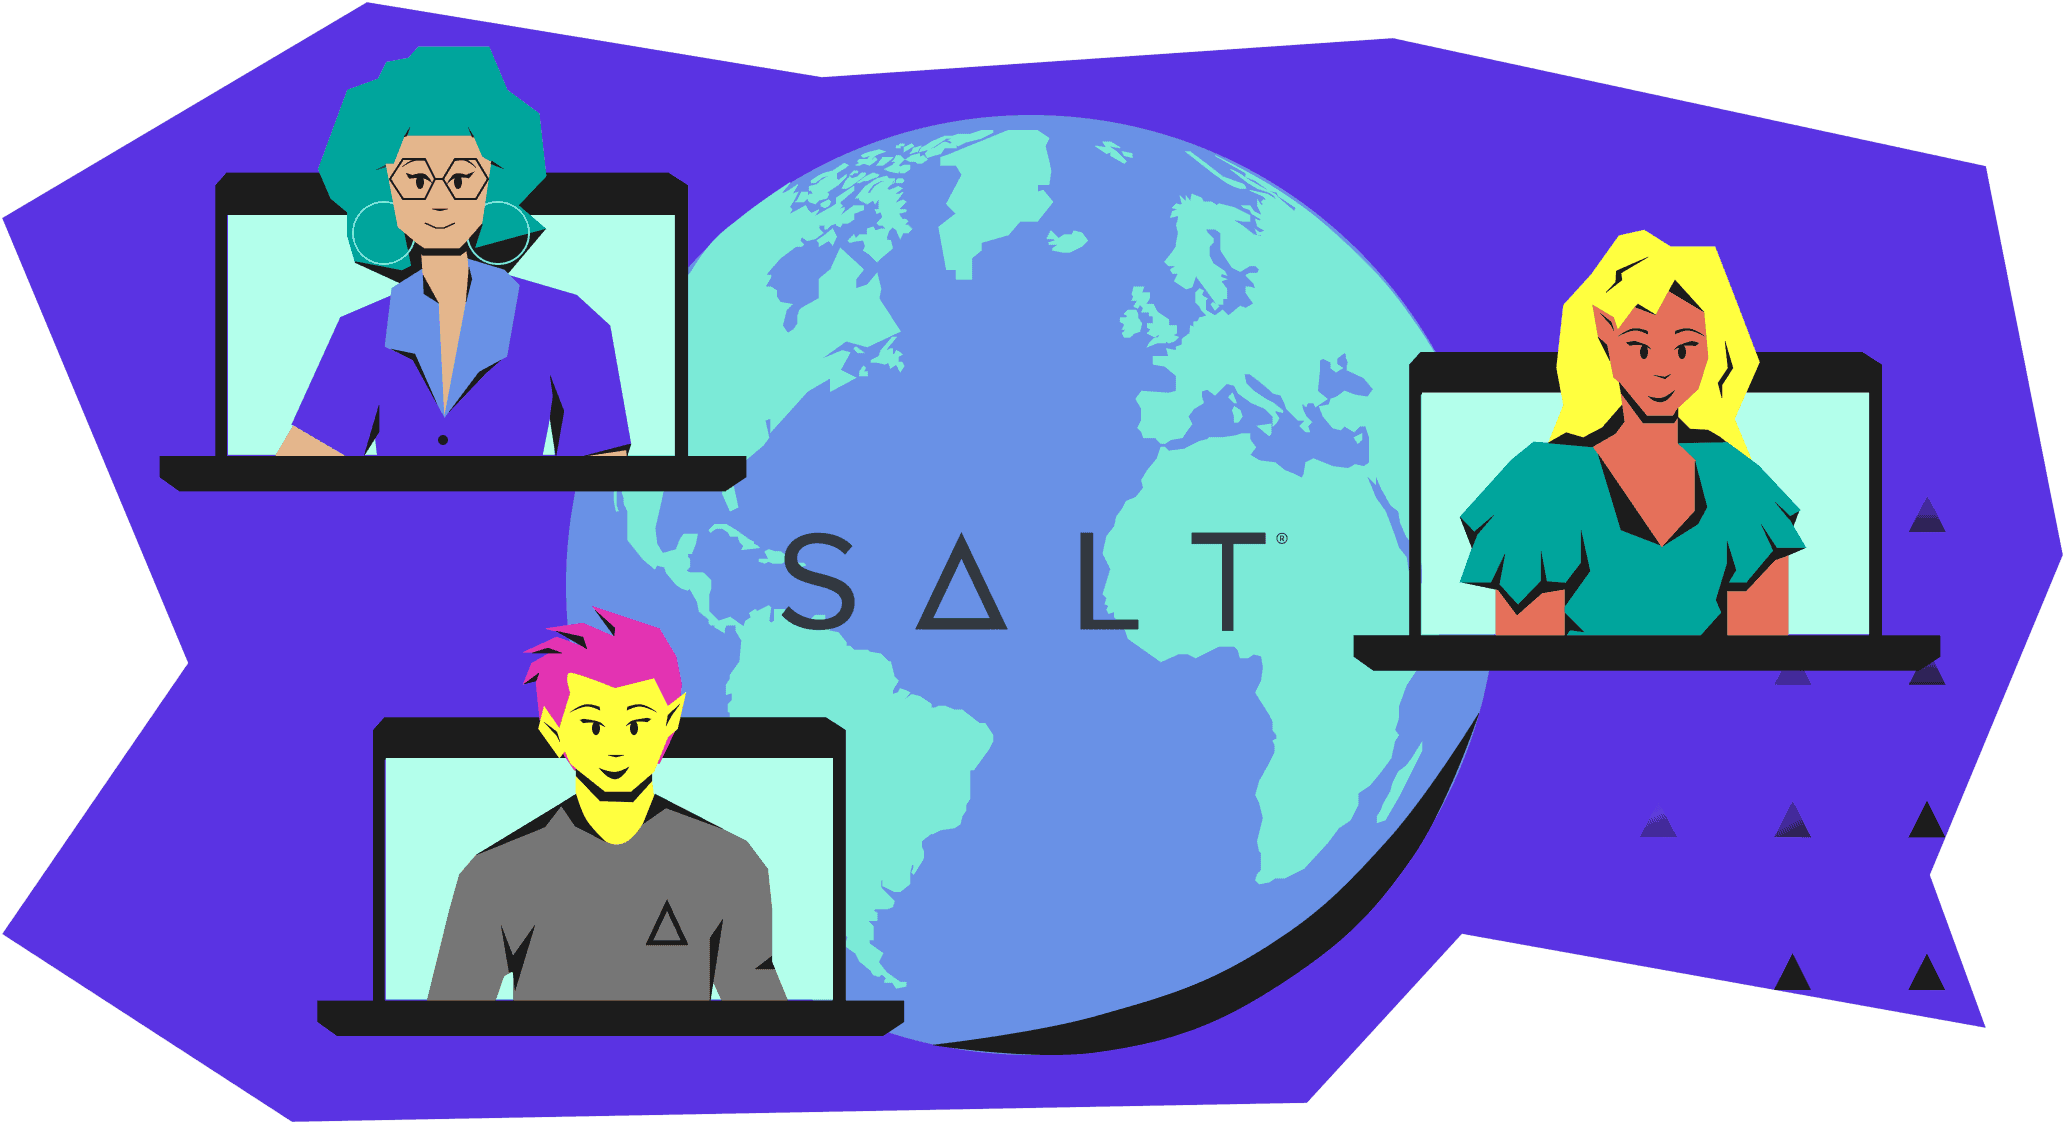 SALT's global team